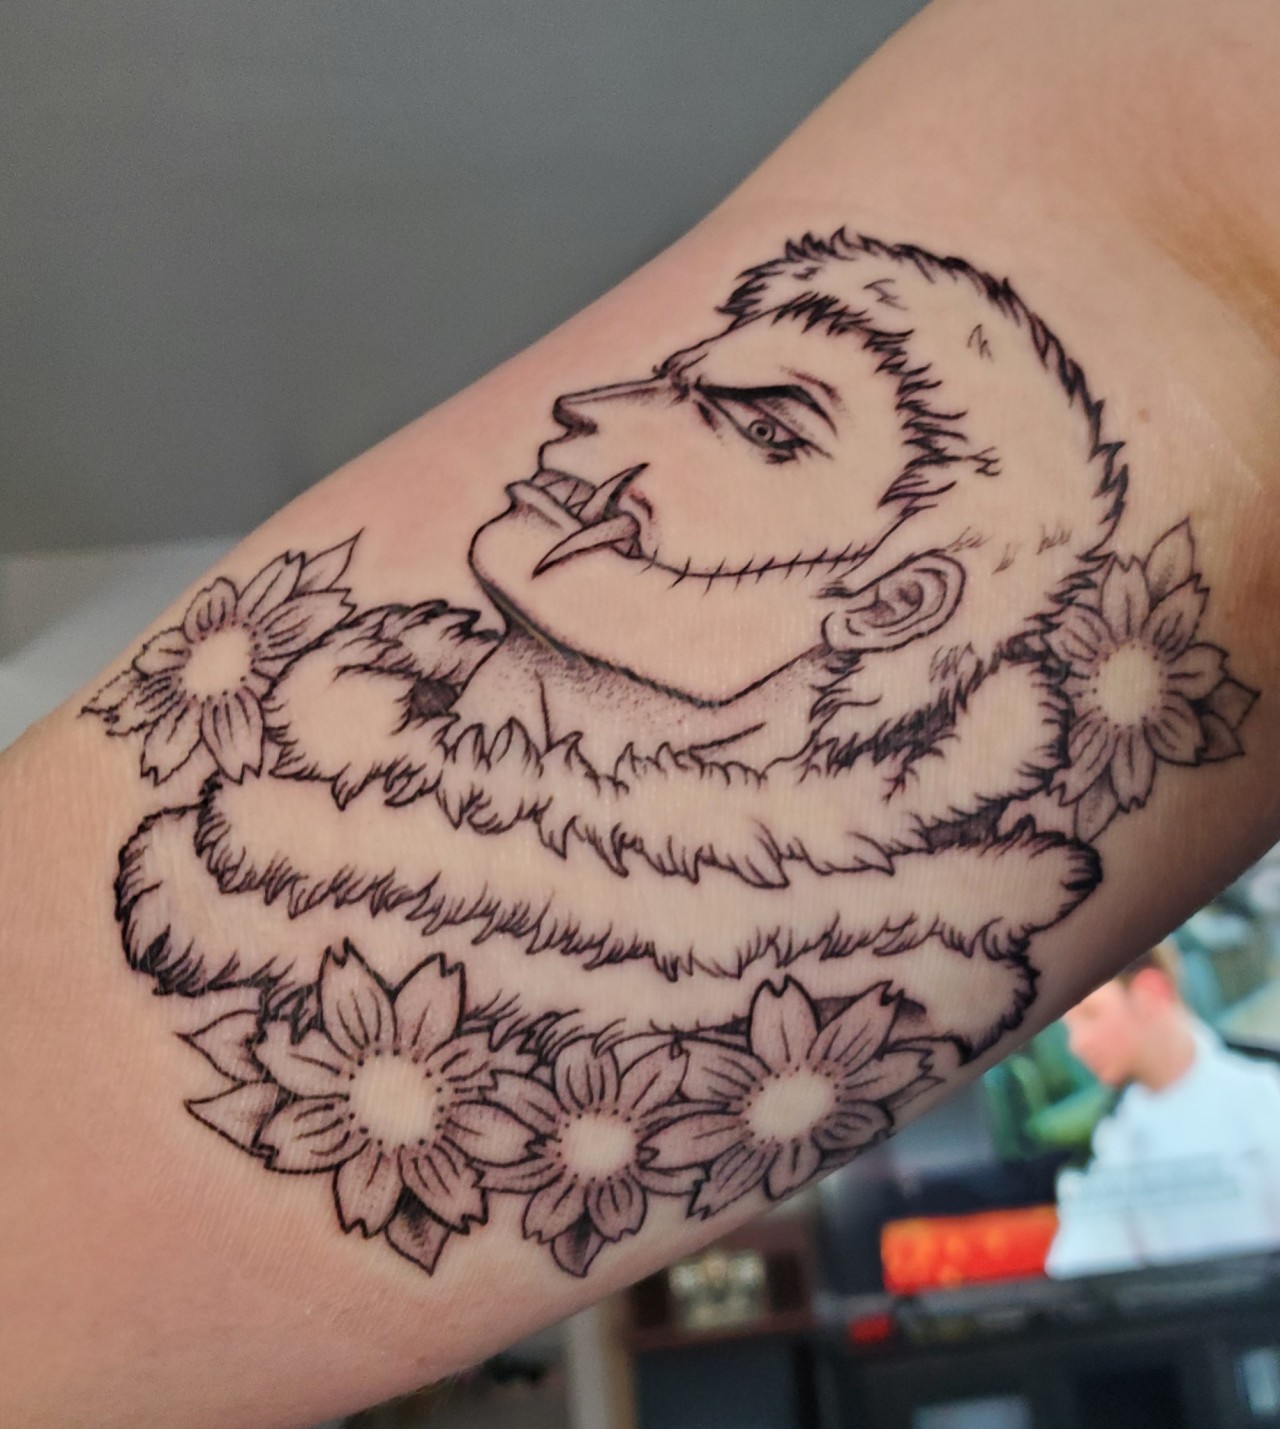 Katakuri s Tattoo Back by Amidazoro on DeviantArt